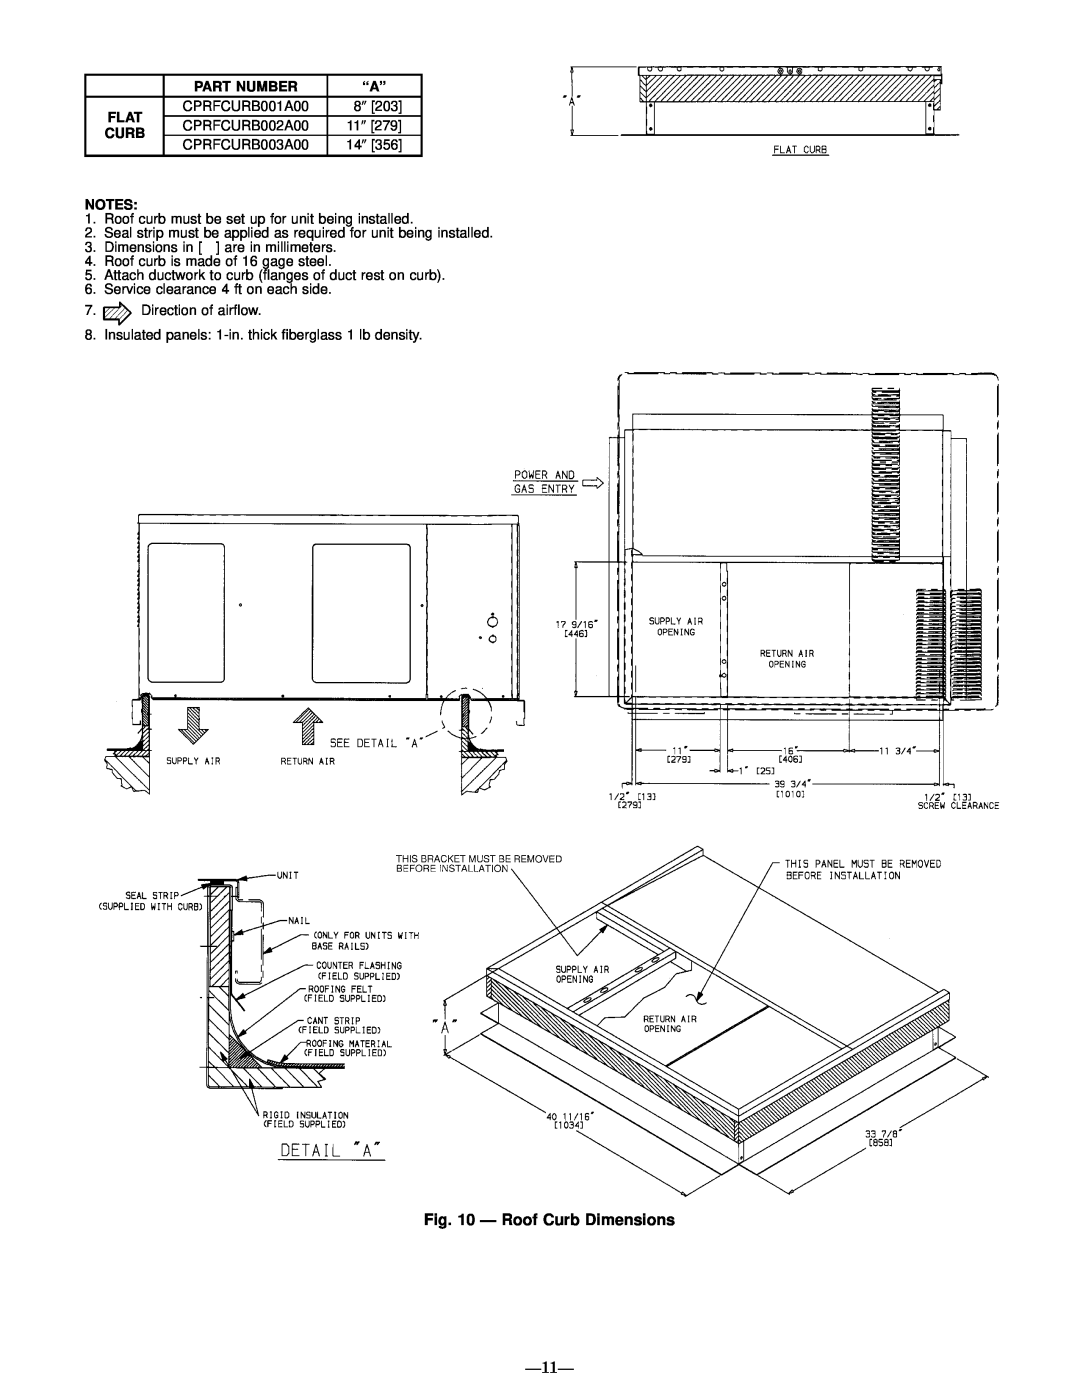 Bryant 589A, 588A user manual Ð Roof Curb Dimensions, Ð11Ð 